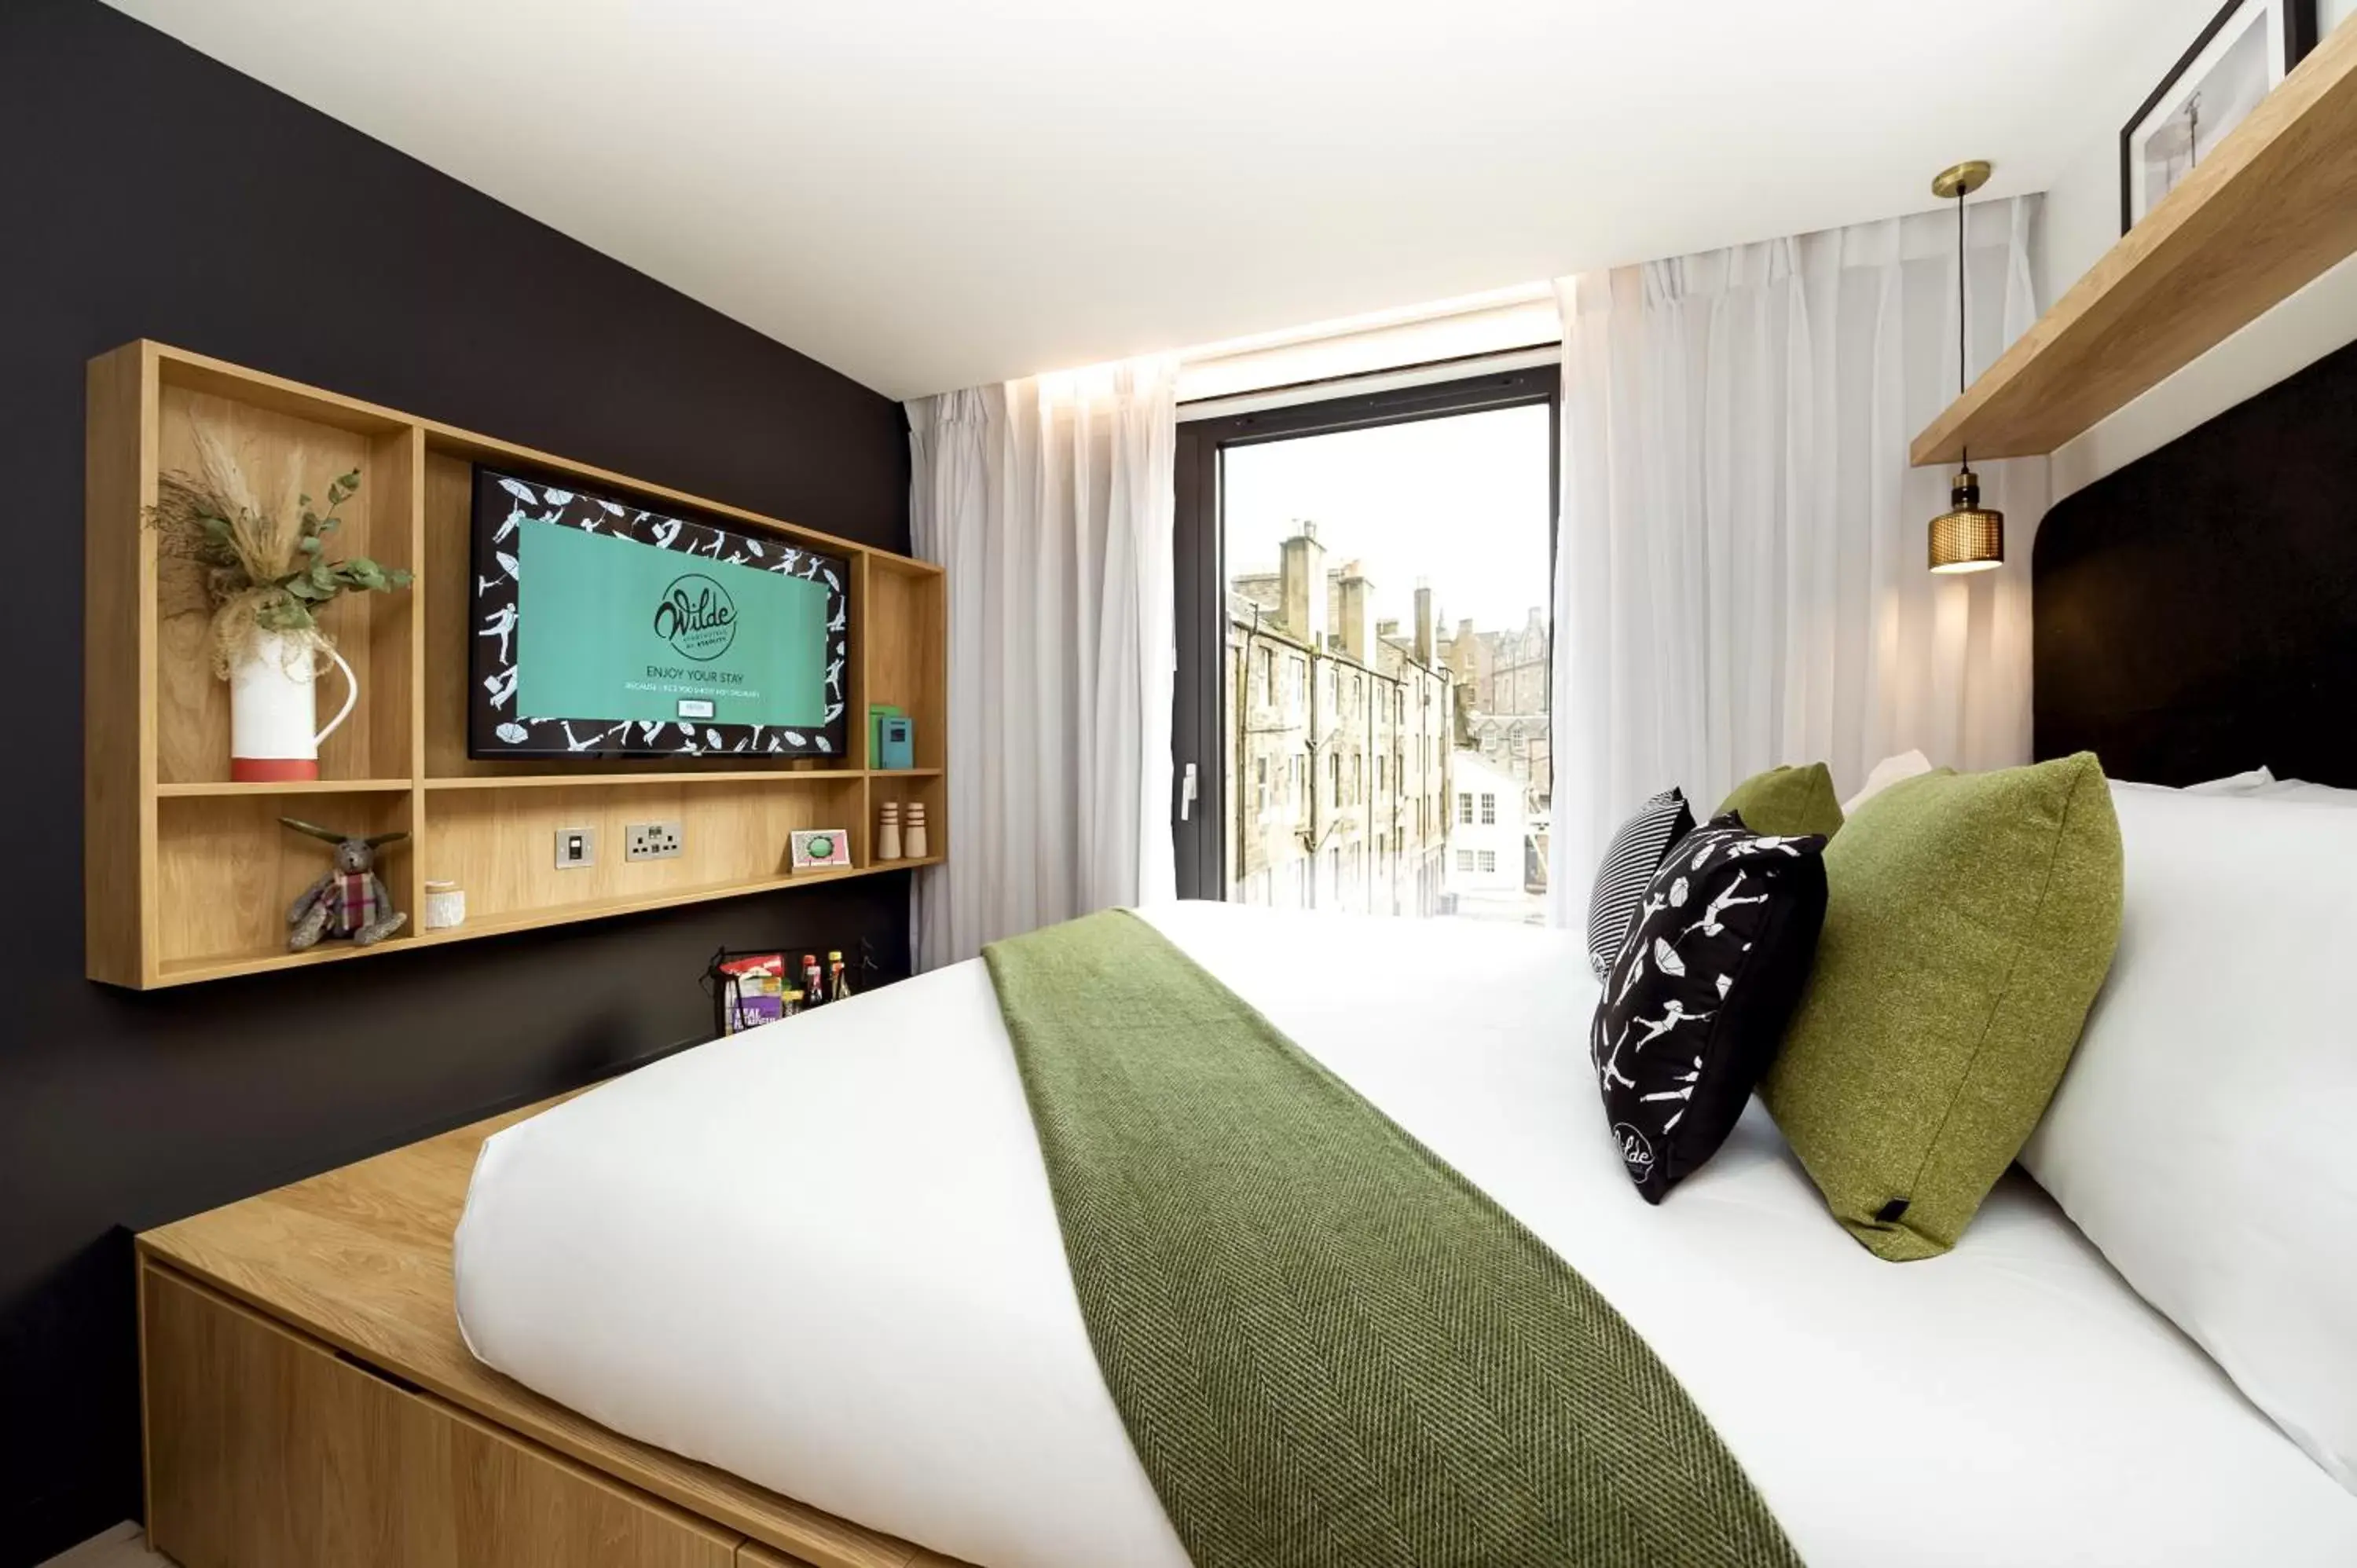 Bedroom, TV/Entertainment Center in Wilde Aparthotels by Staycity Edinburgh Grassmarket